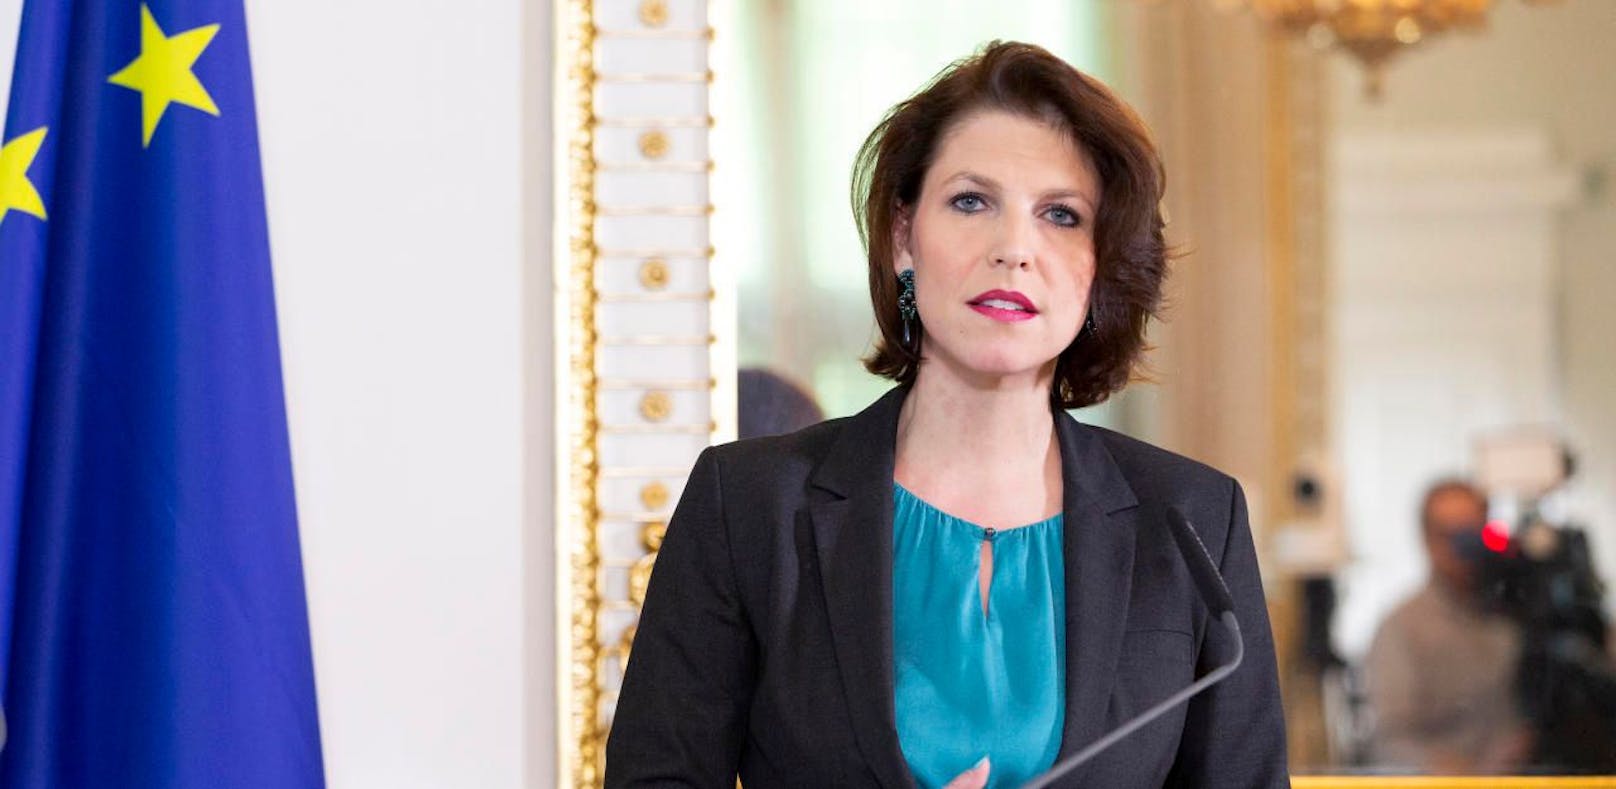 Staatssekretärin Karoline Edtstadler kandidiert auf Platz 2 der ÖVP-Liste.